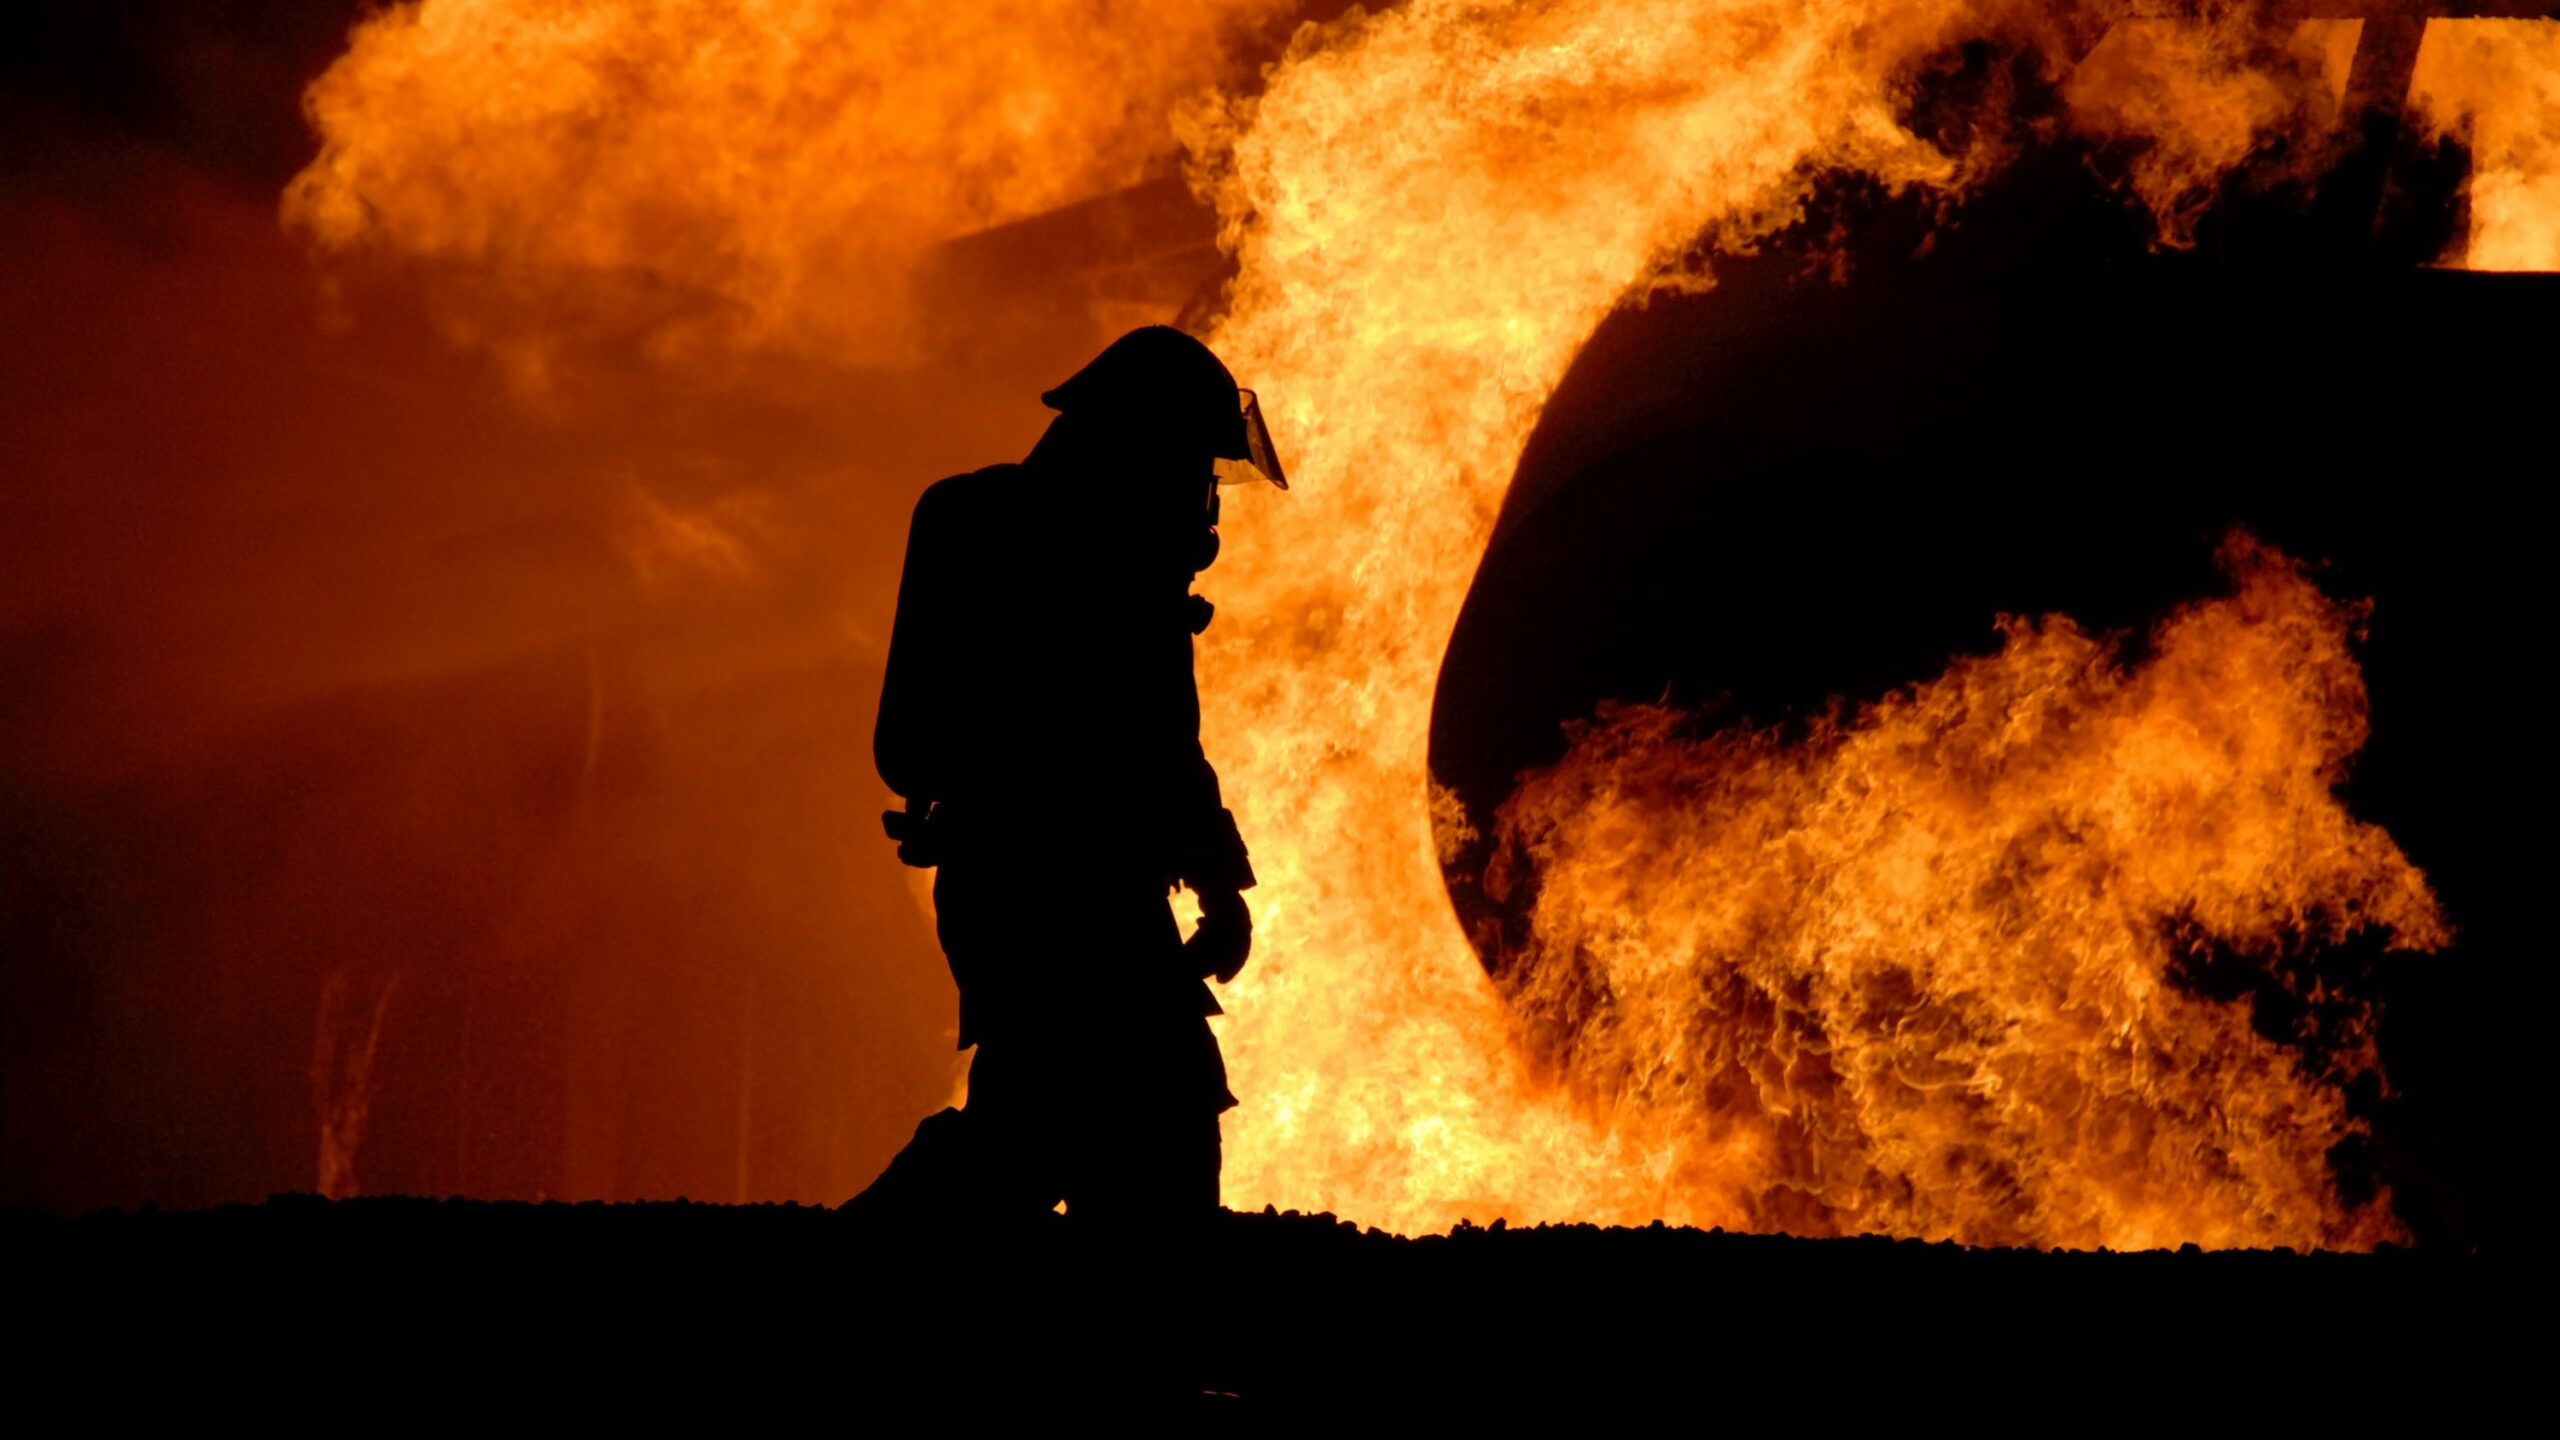 Банные процедуры закончились пожаром в Красном Селе: пострадал мужчина